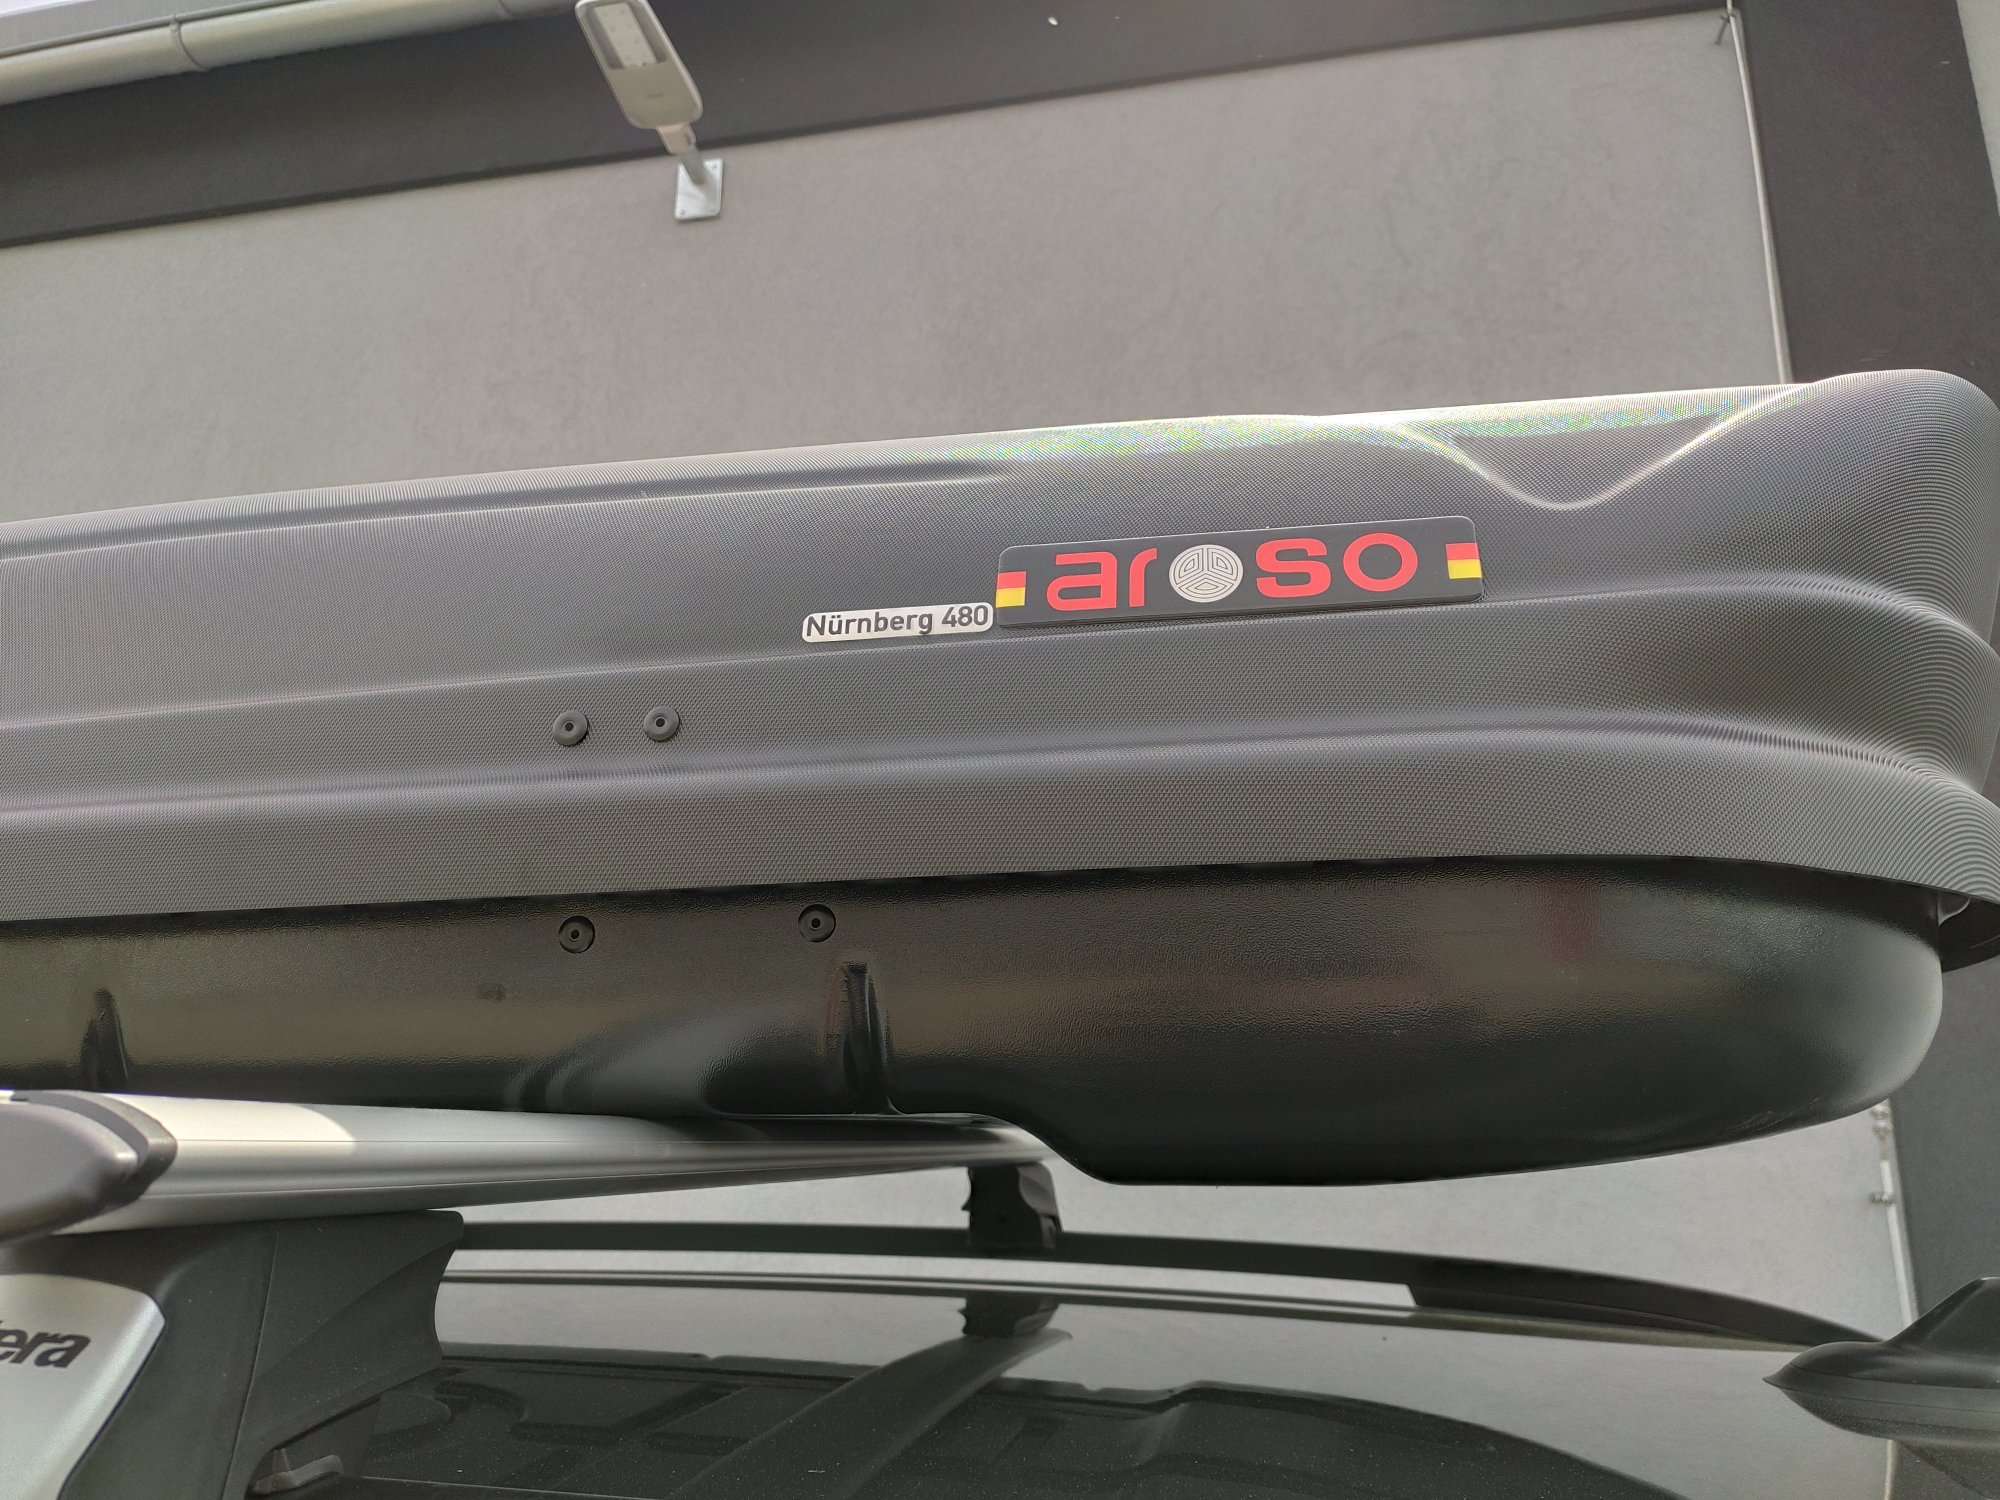 Montáž střešního boxu Aroso Nürnberg 480 Duolift na vozidlo zákazníka v dílně Filsonstore Uhříněves